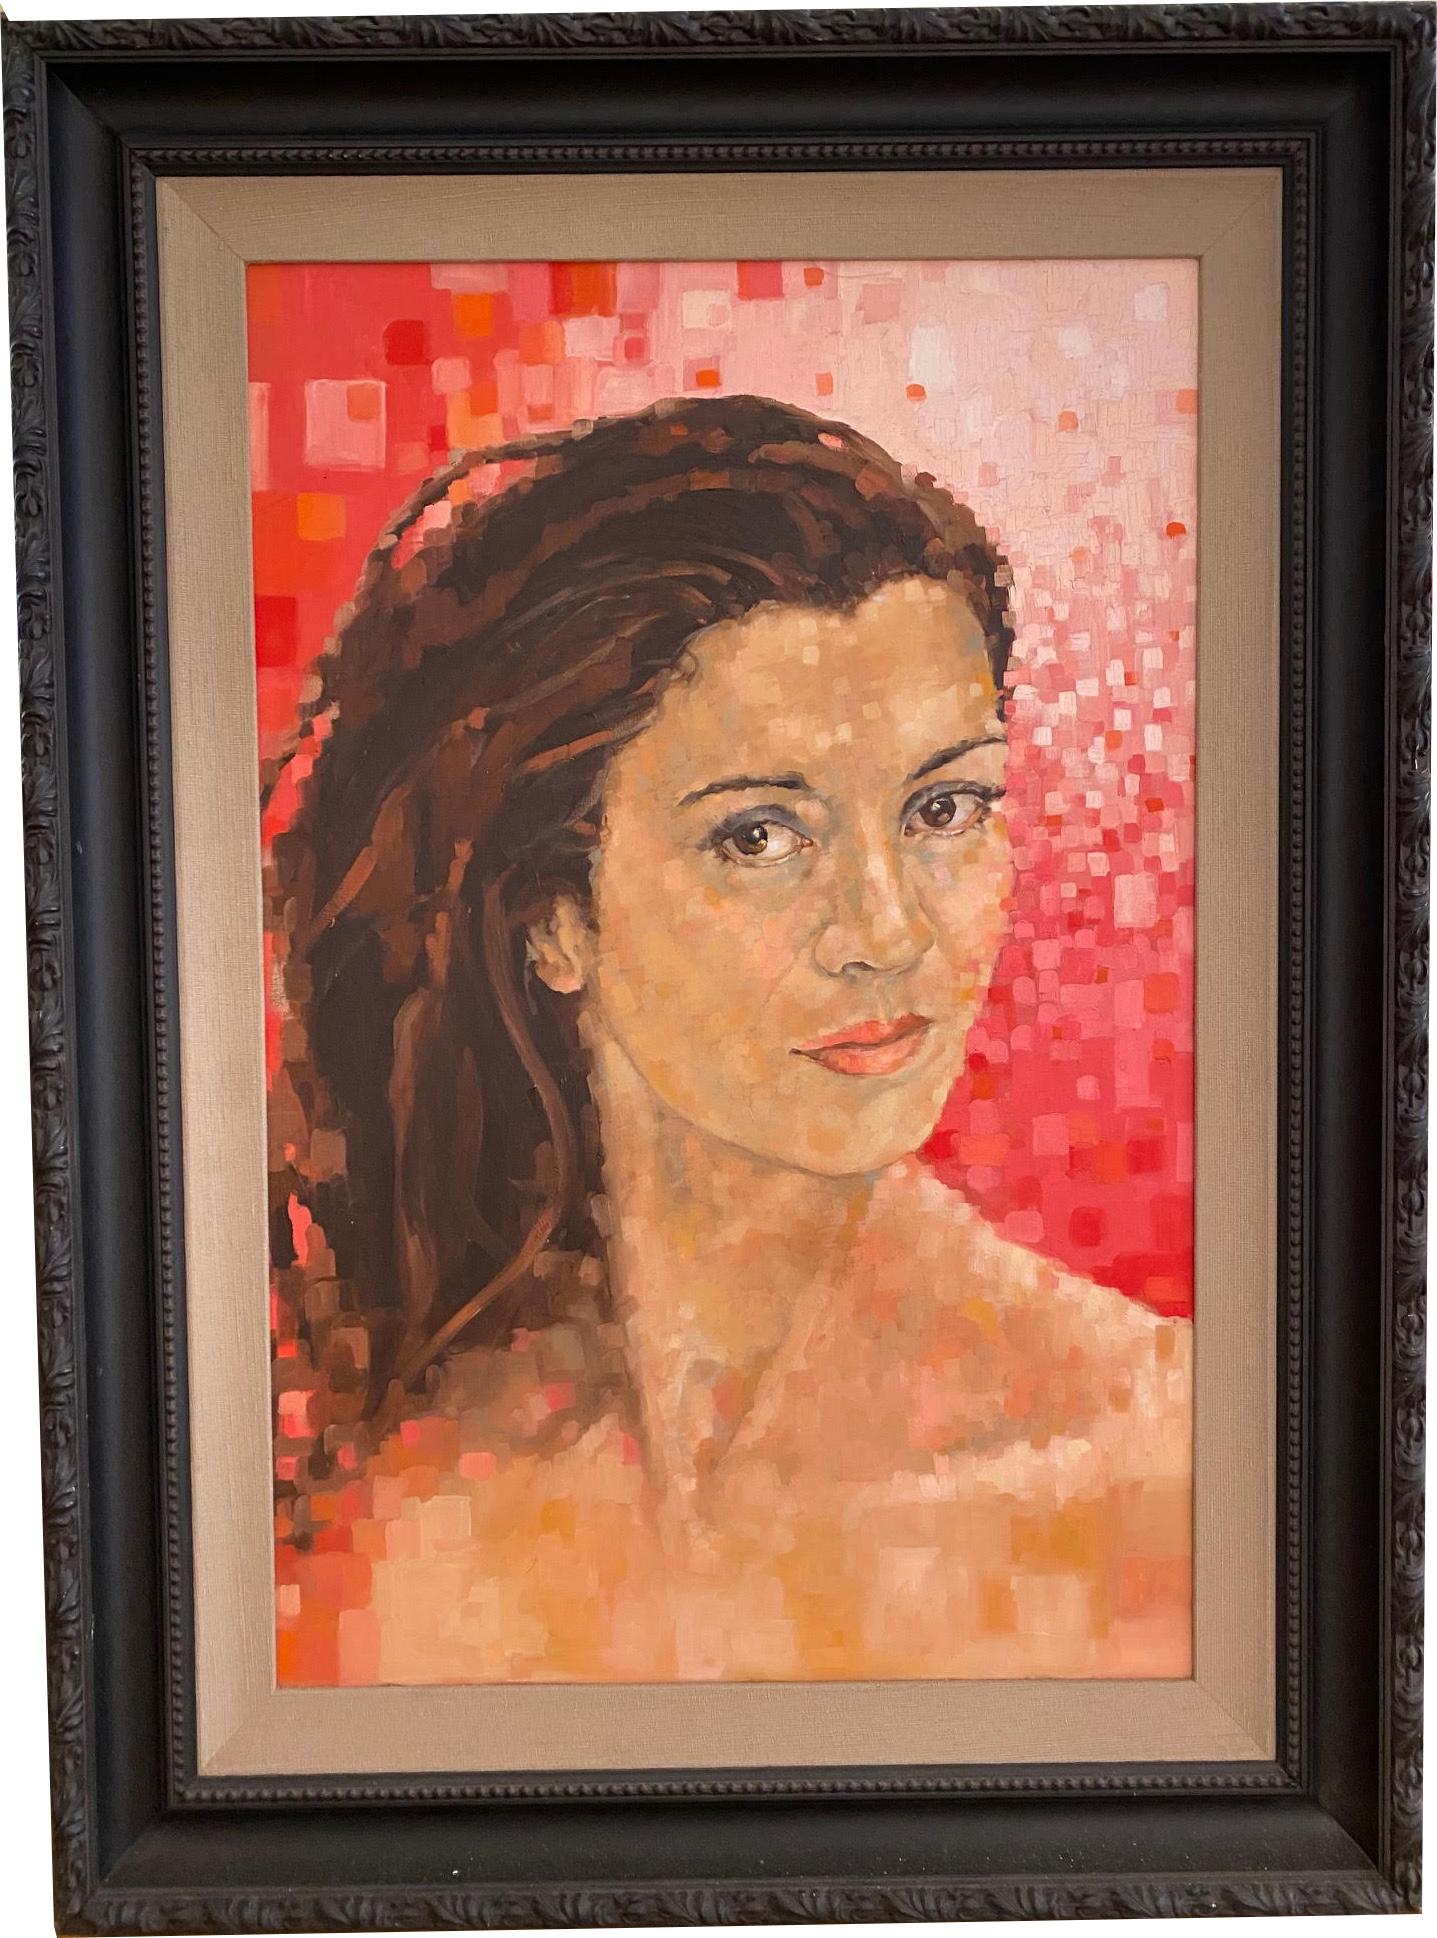 Portrait de femme avec fond rouge cubiste  Modèle féminin  Huile sur panneau par Shana - Painting de Shana Wilson